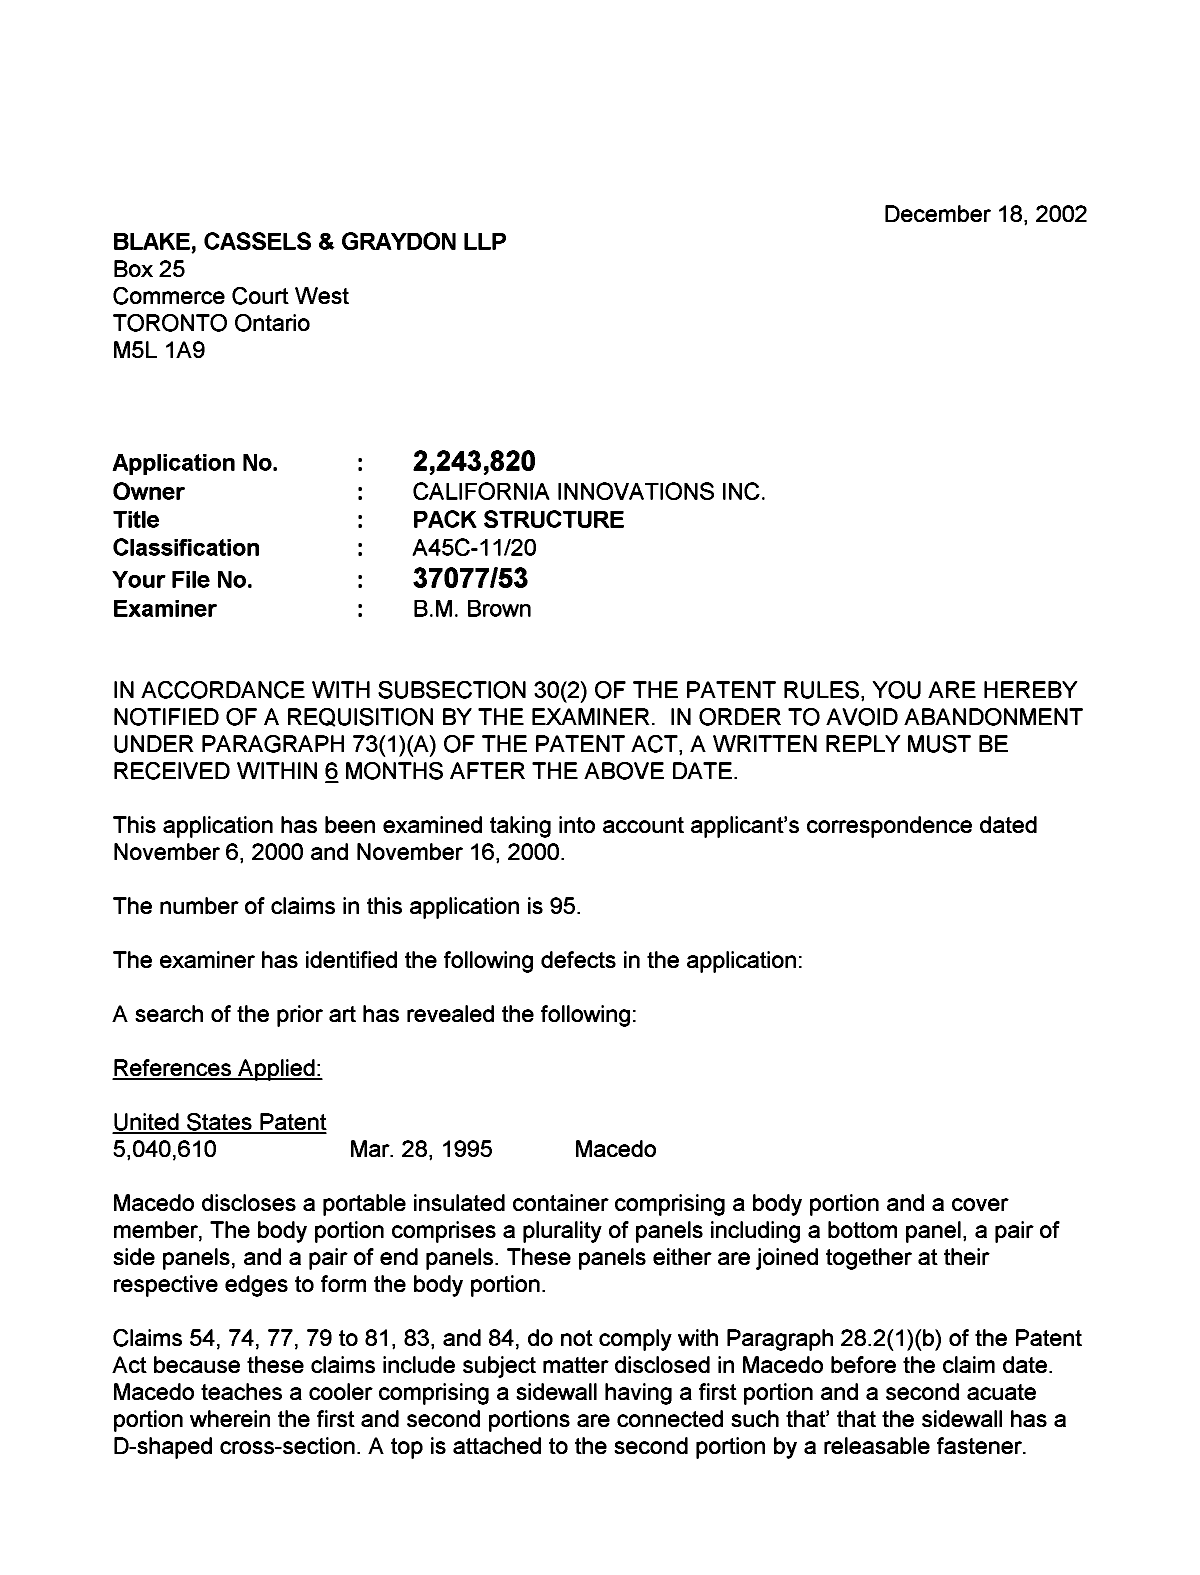 Document de brevet canadien 2243820. Poursuite-Amendment 20021218. Image 1 de 2